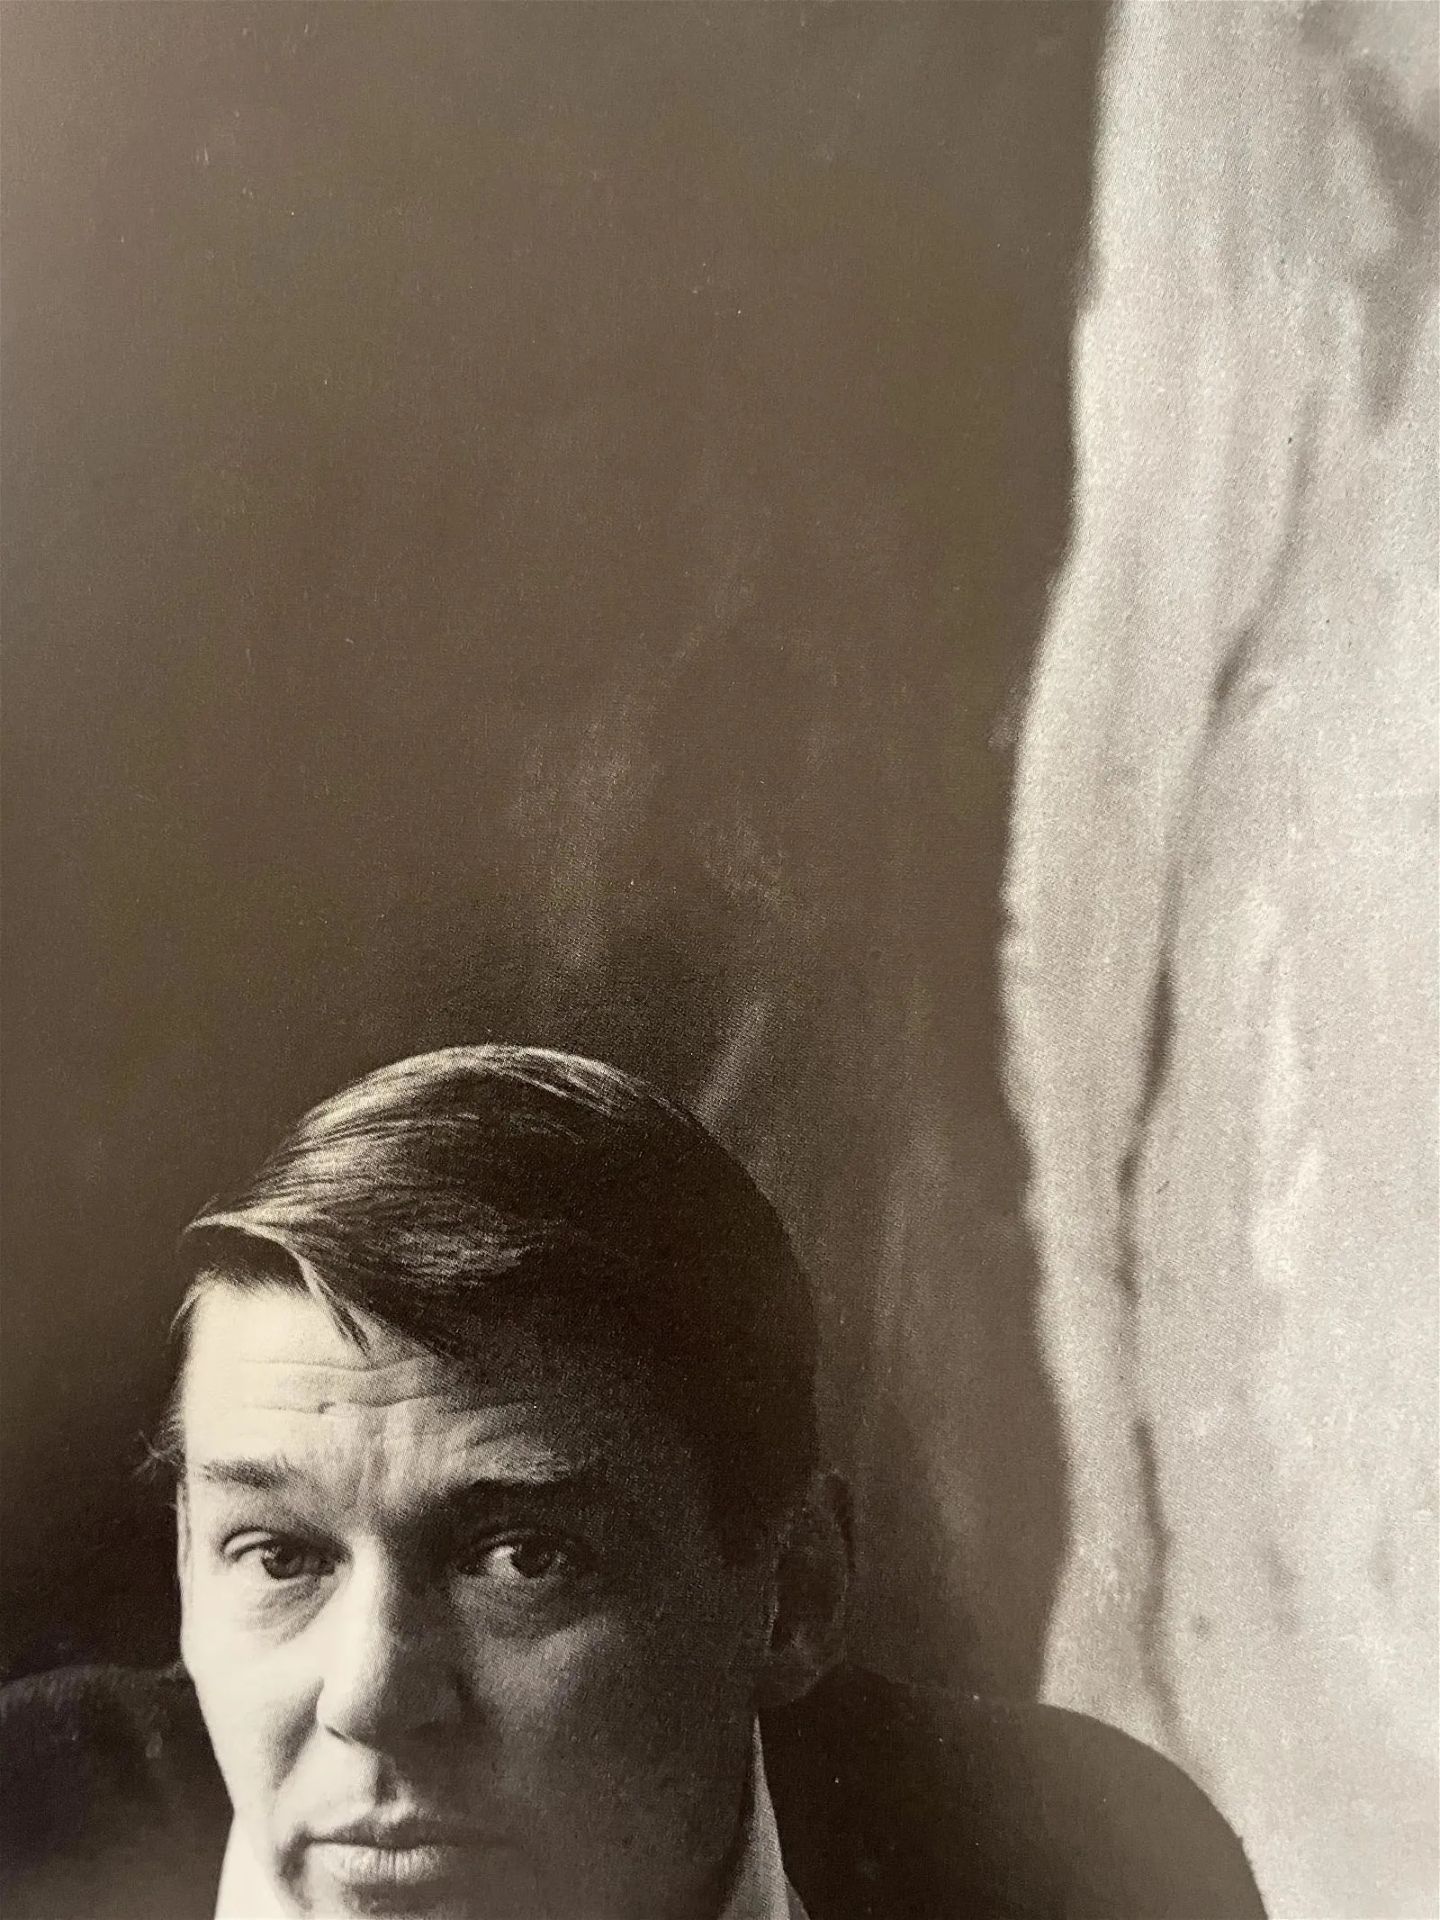 Hans Namuth "Richard Diebenkorn, San Francisco, 1958" Print - Bild 3 aus 6